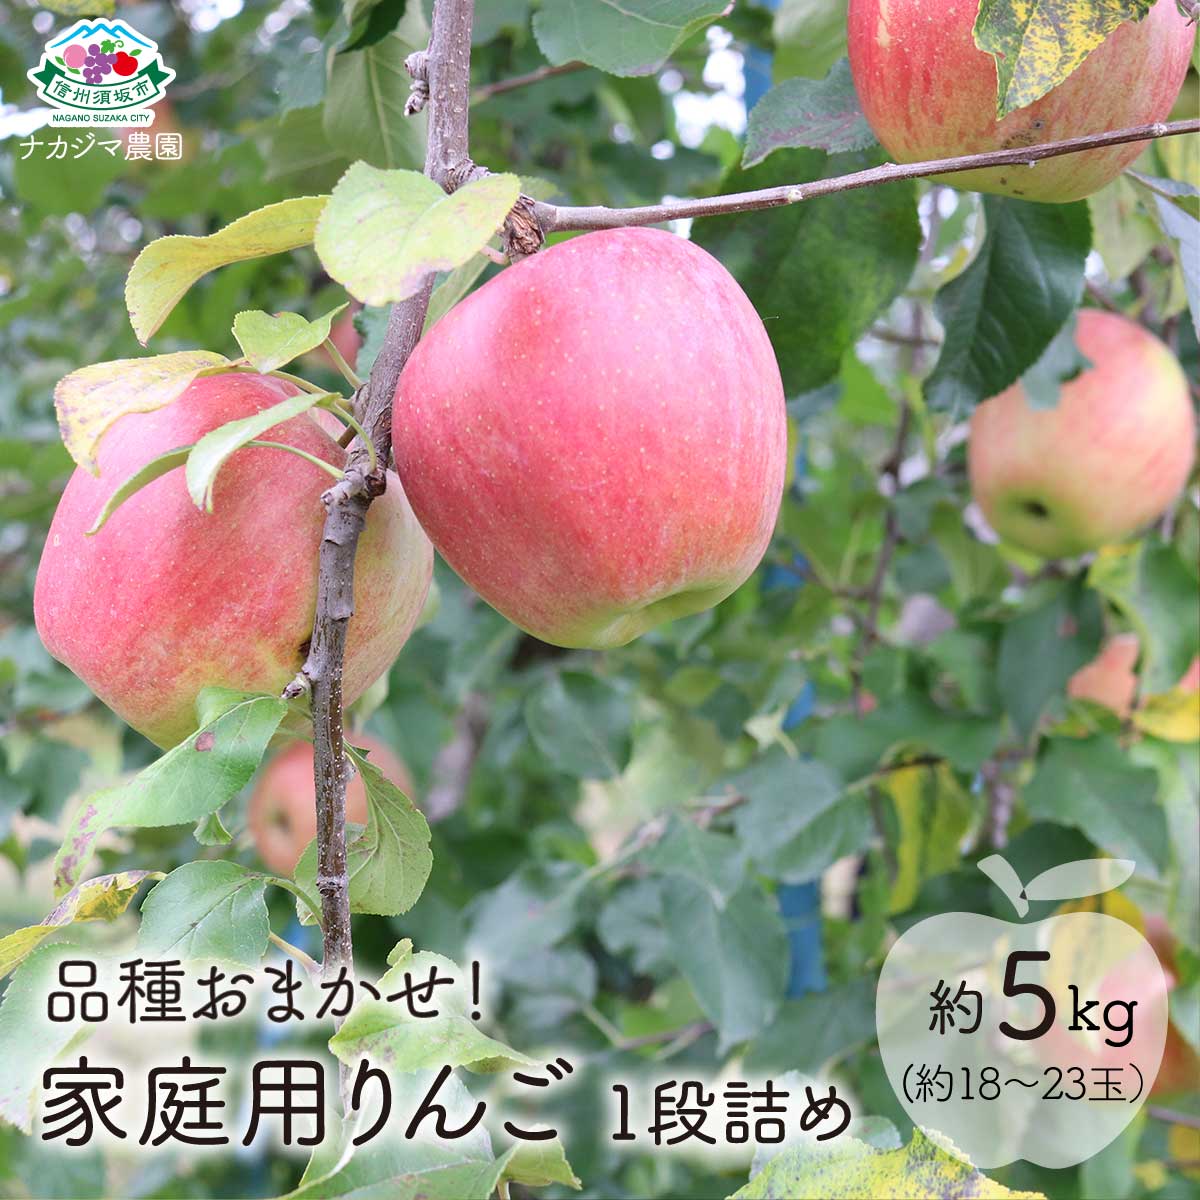 【ふるさと納税】【品種おまかせ】家庭用りんご 1段詰